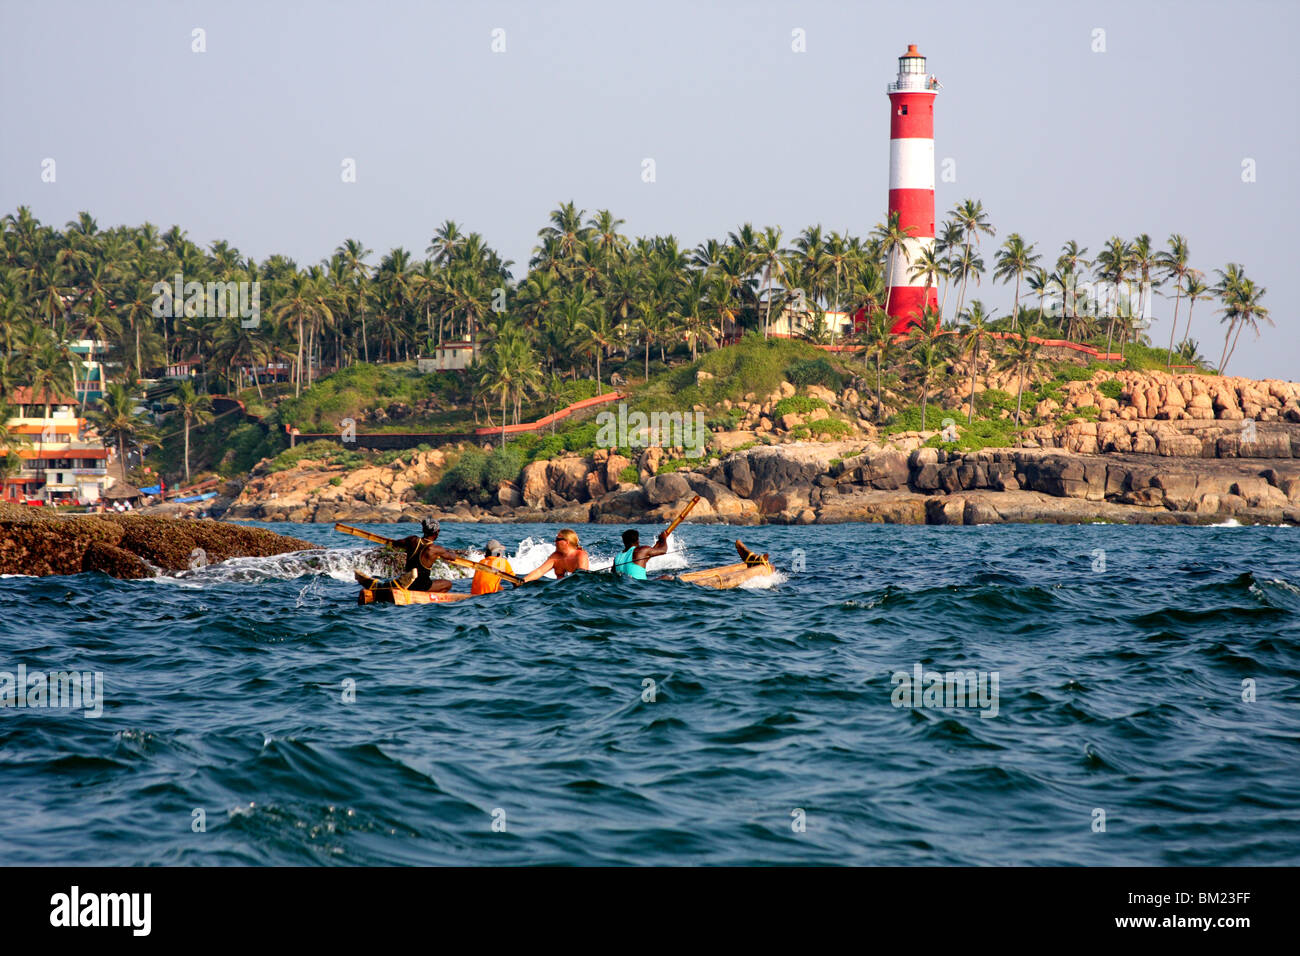 Los turistas en un barco, Kovalam, Trivandrum, Kerala, India Foto de stock